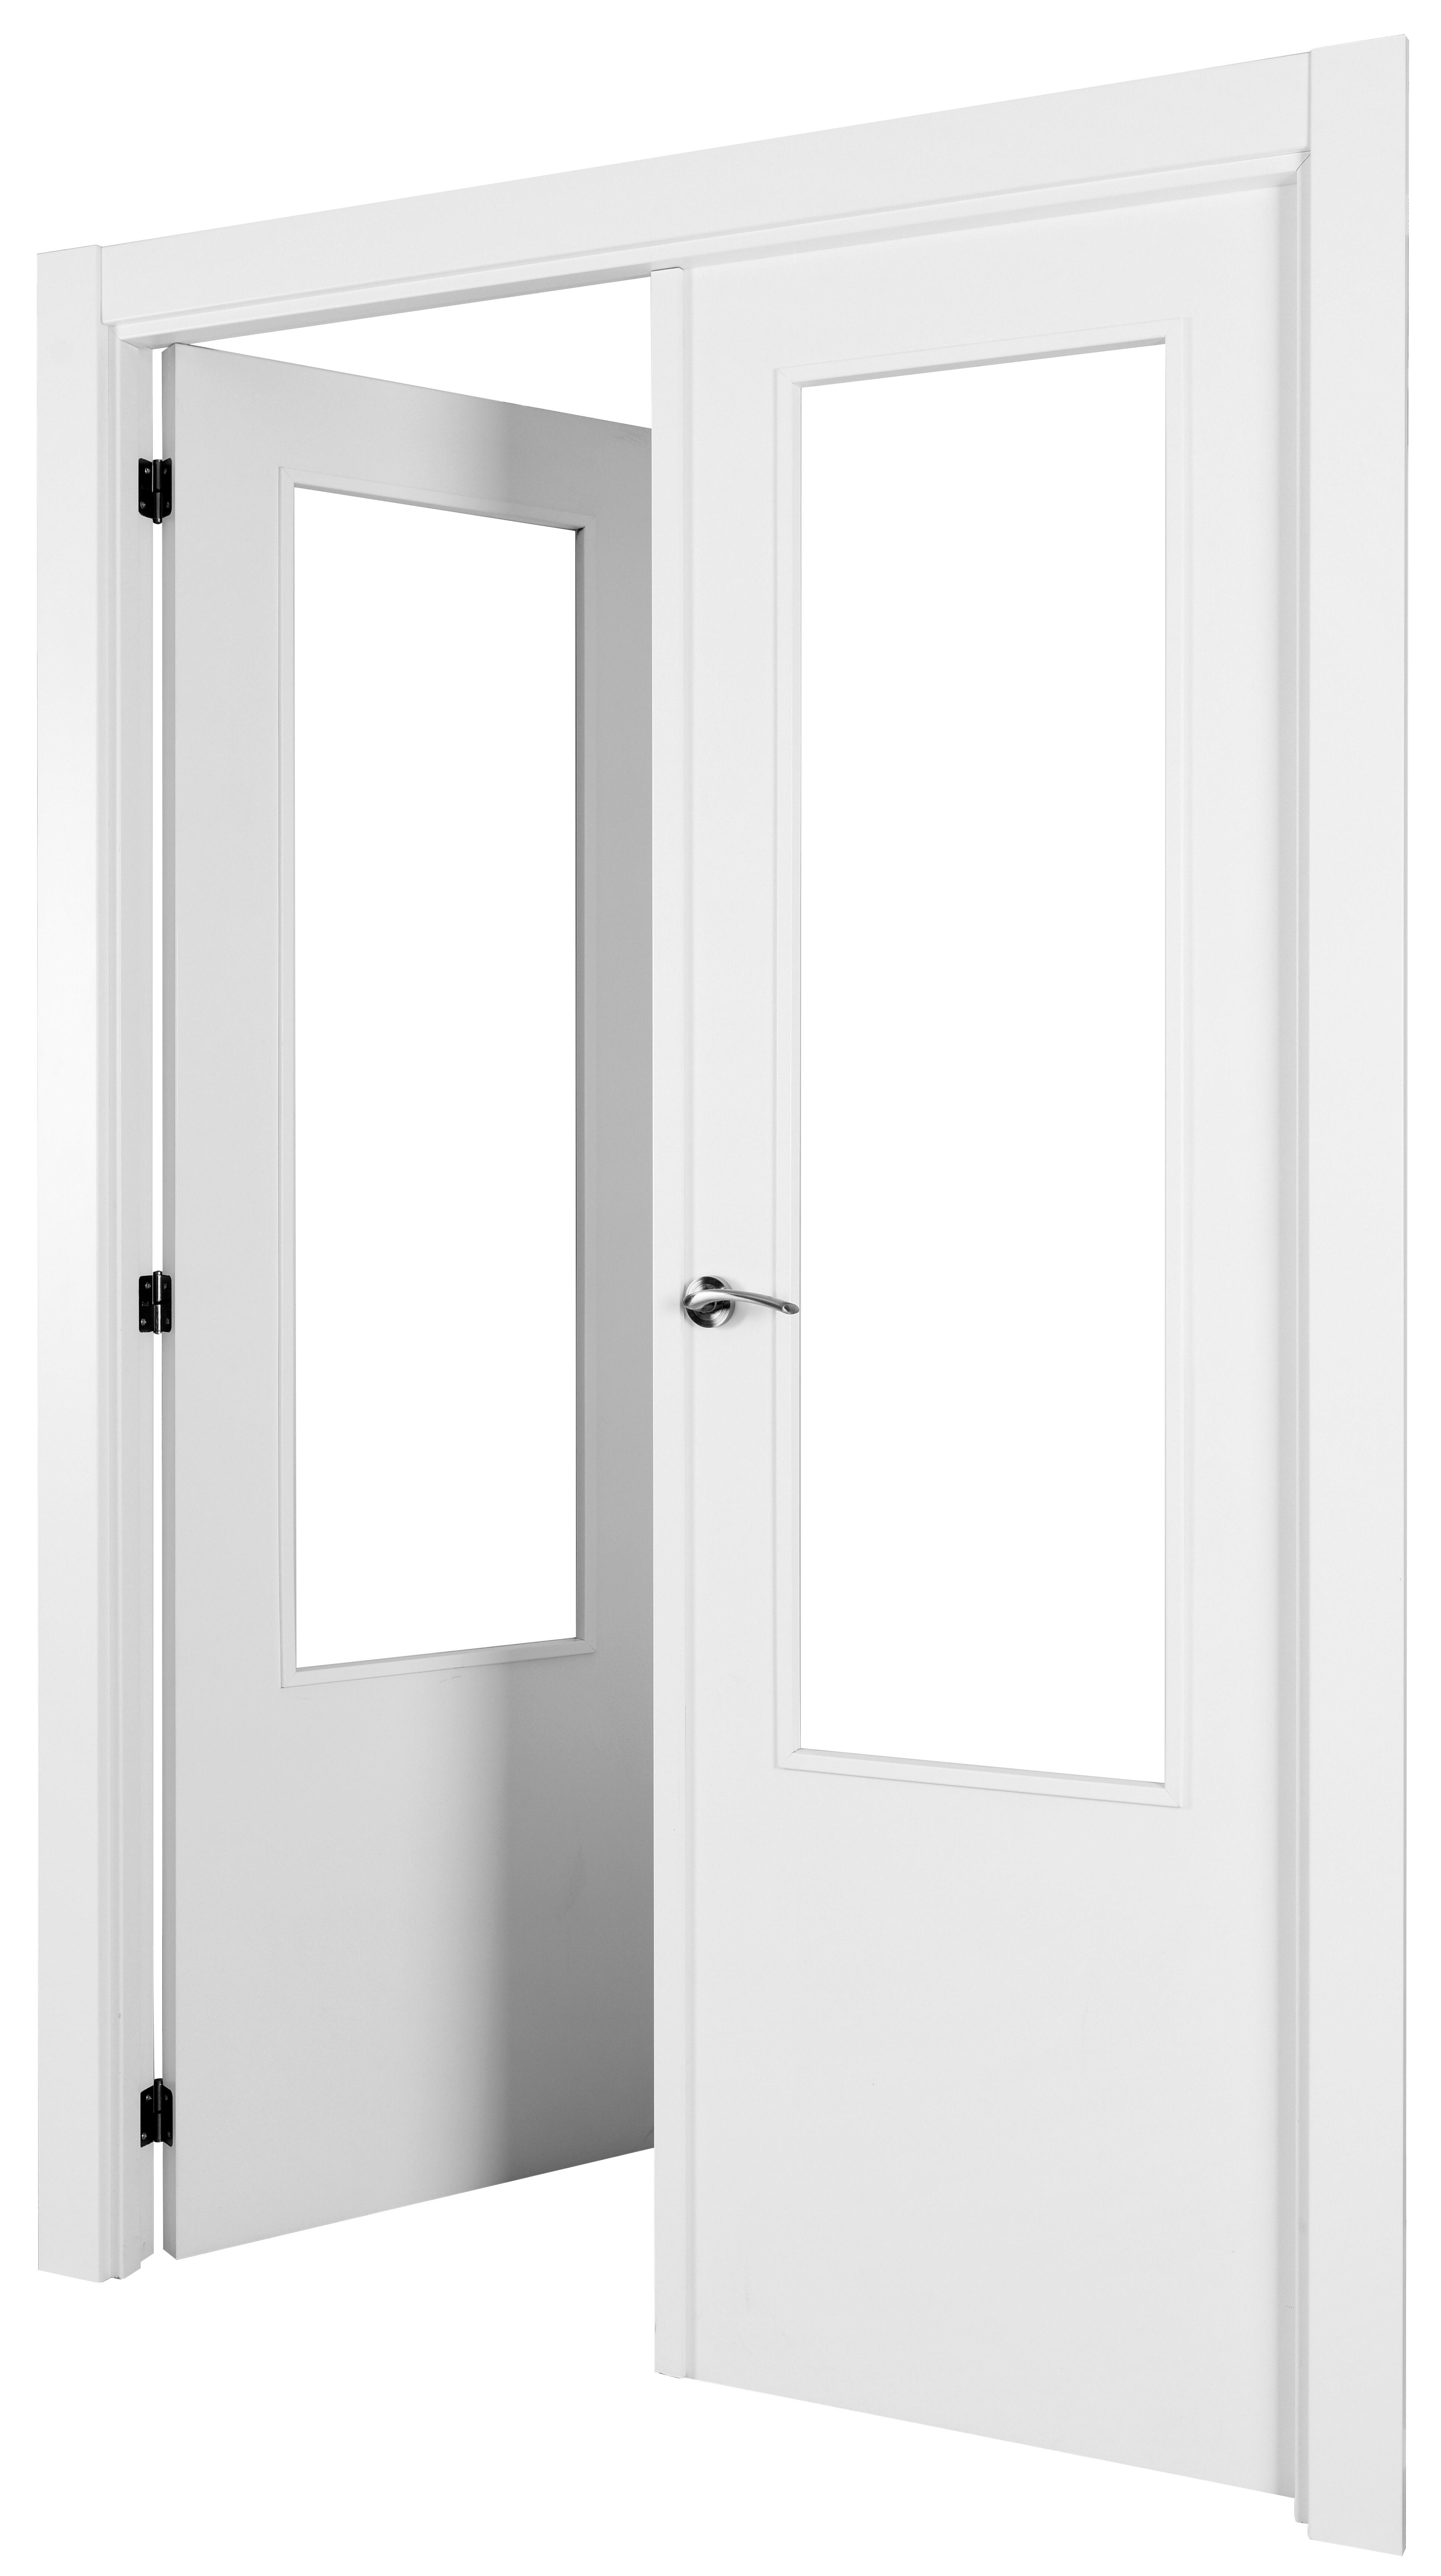 Puerta abatible lyon blanca aero blanco izquierda con cristal de 110x30 y 115cm